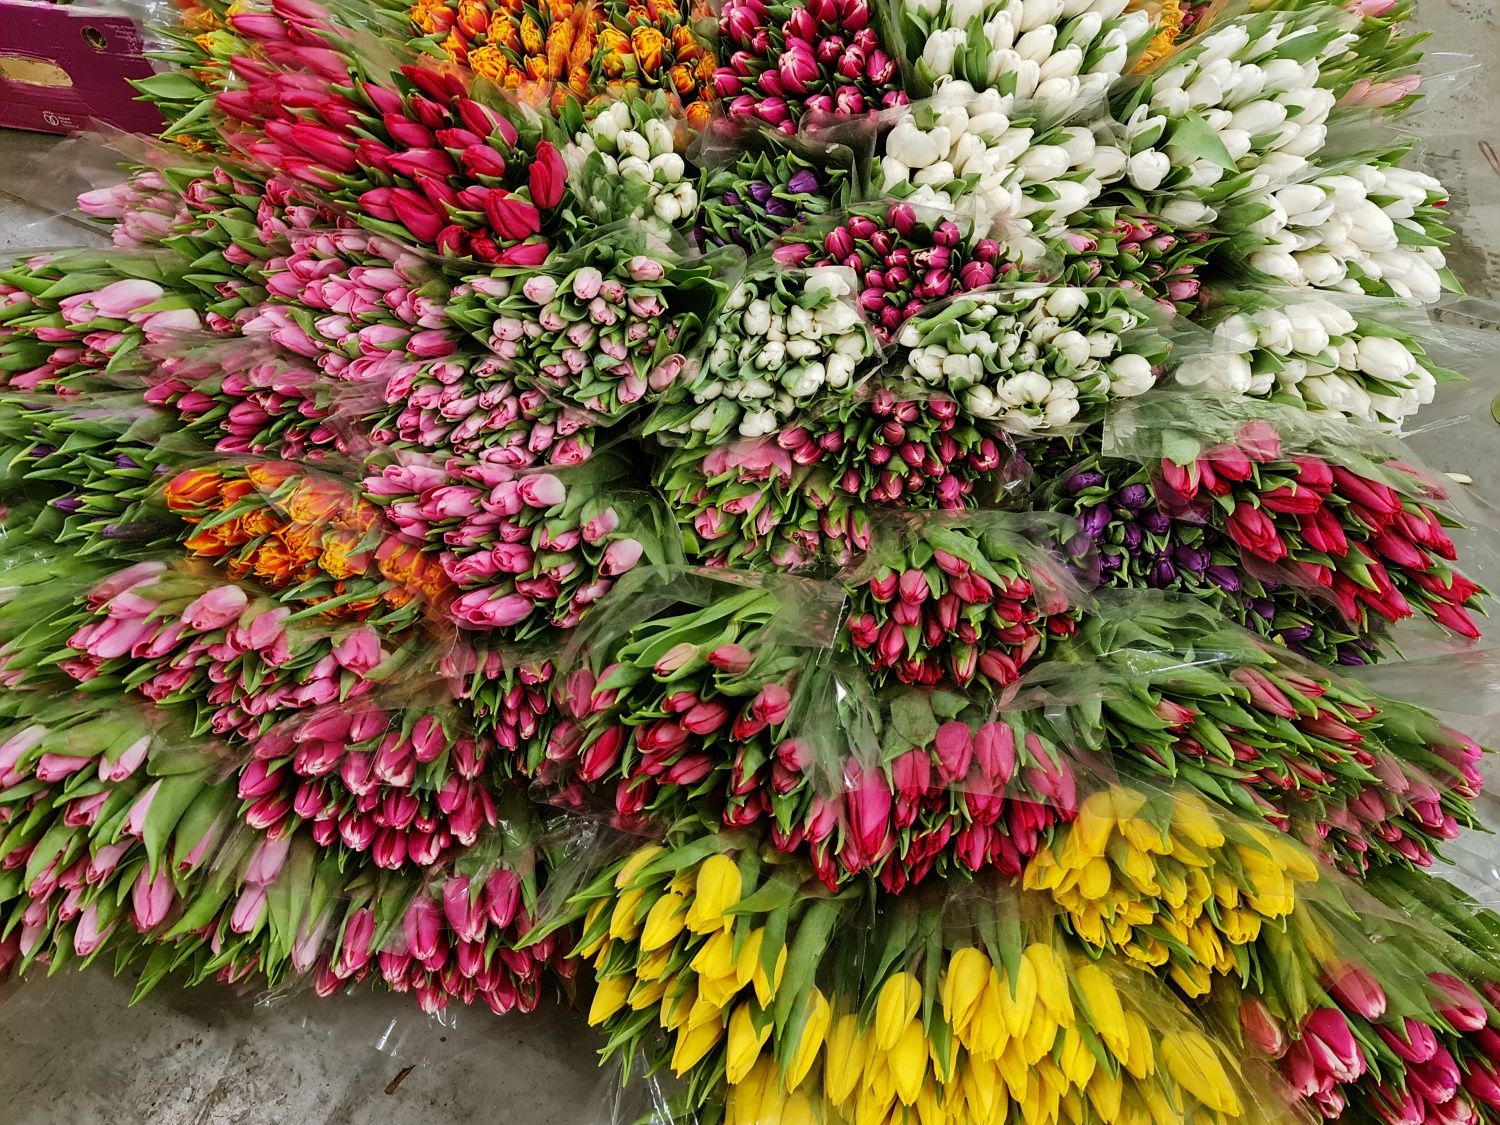 Спроба закупити дешево квіти закінчилася втратою понад 23 тис грн